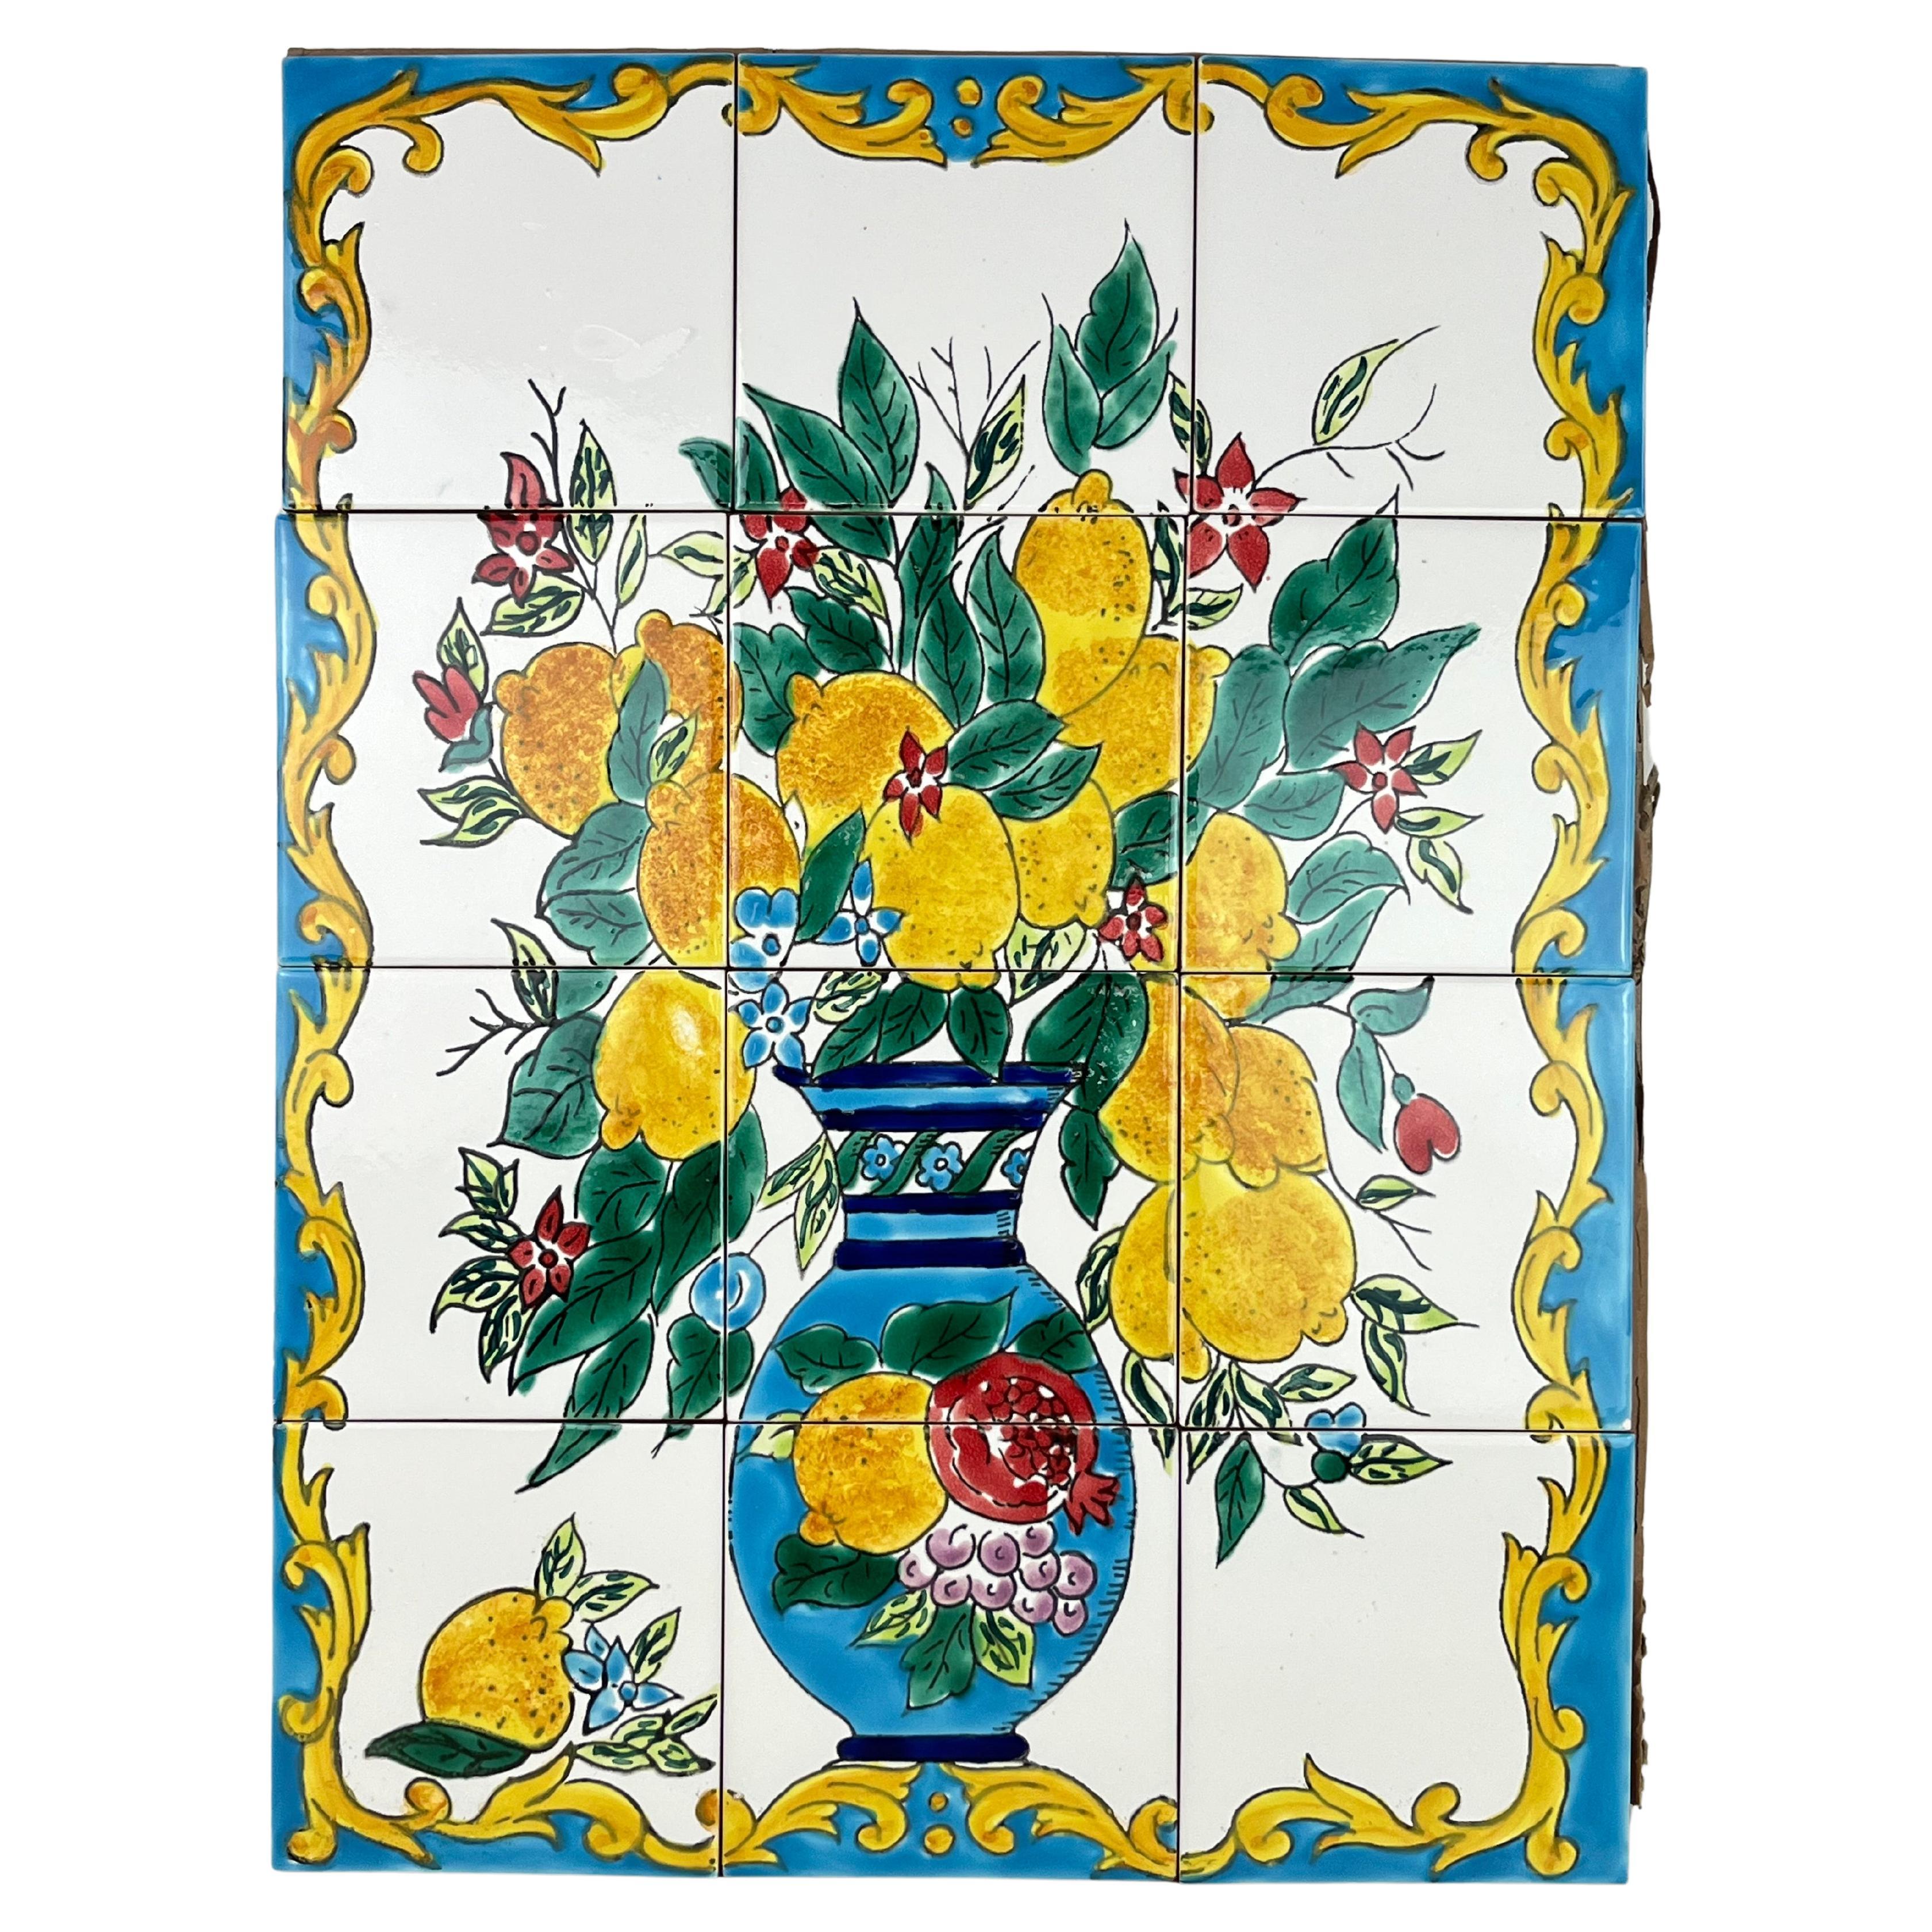 Hand-decorated Ceramic Panel 60 x 45 cm, Italy, 1980s